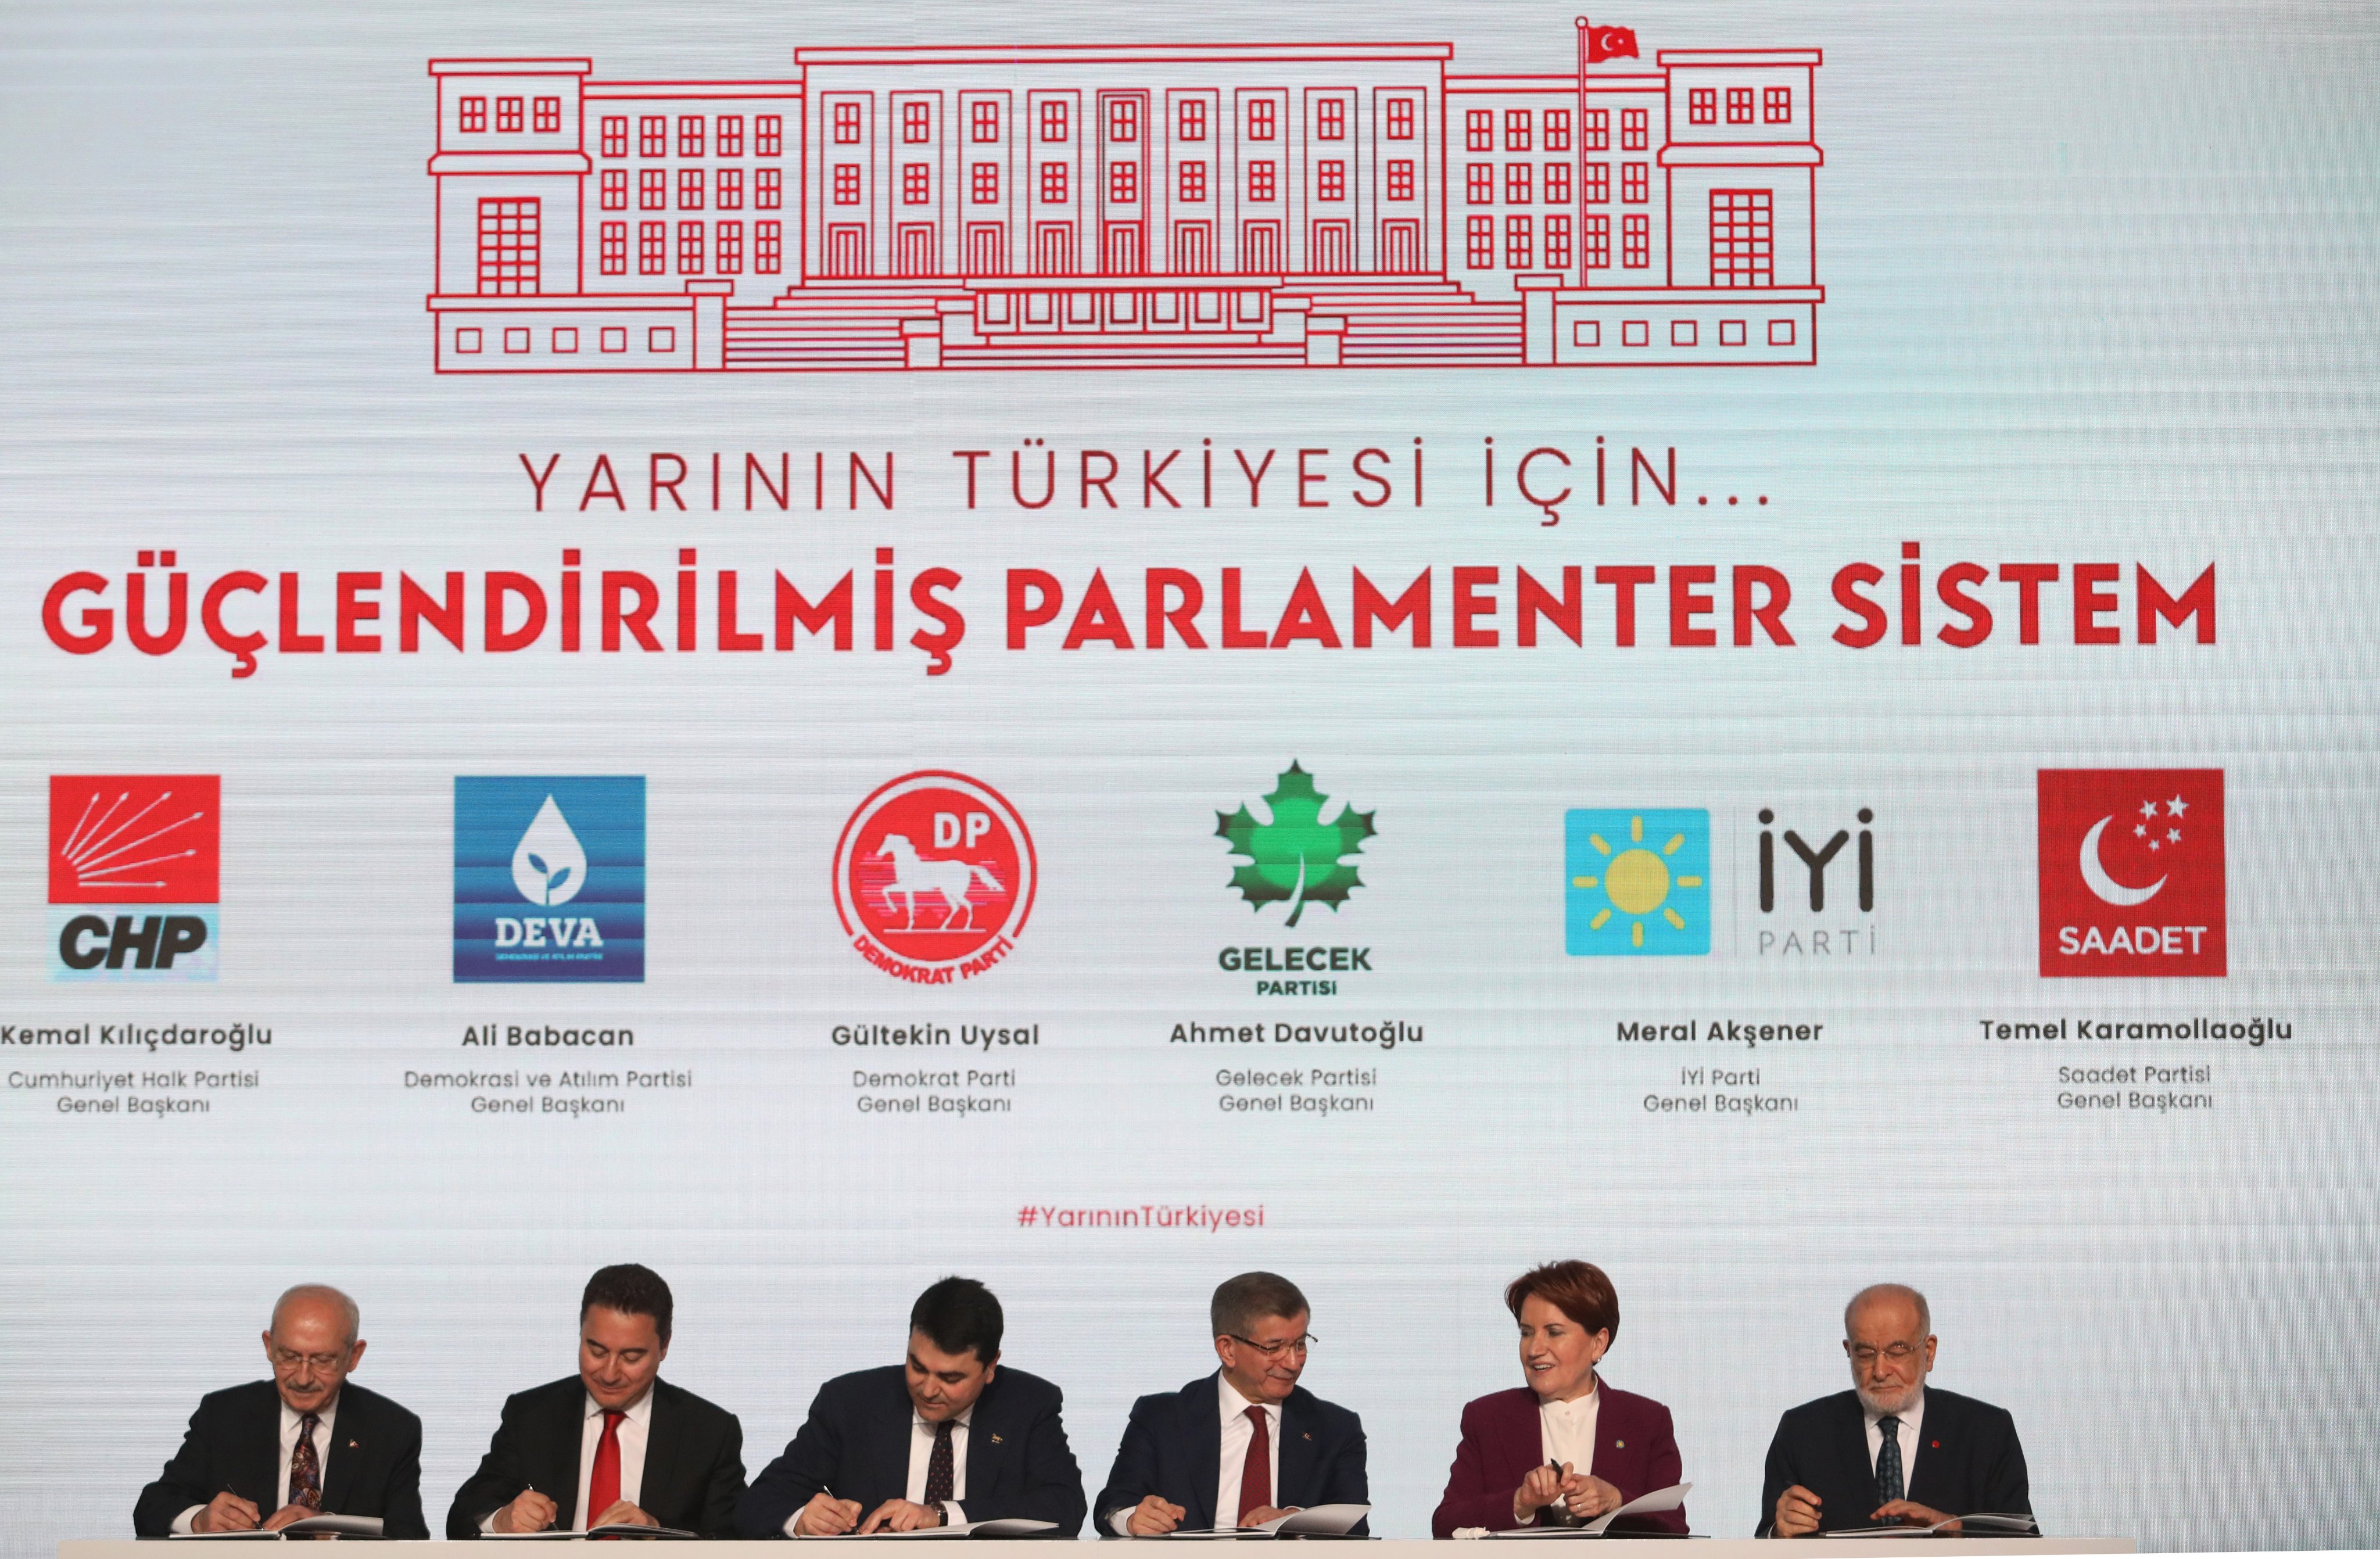 AKP’nin kurulduğu otelden çıkan, “Yeni Türkiye” mutabakatı: “Bundan sonrası yokuş aşağı”